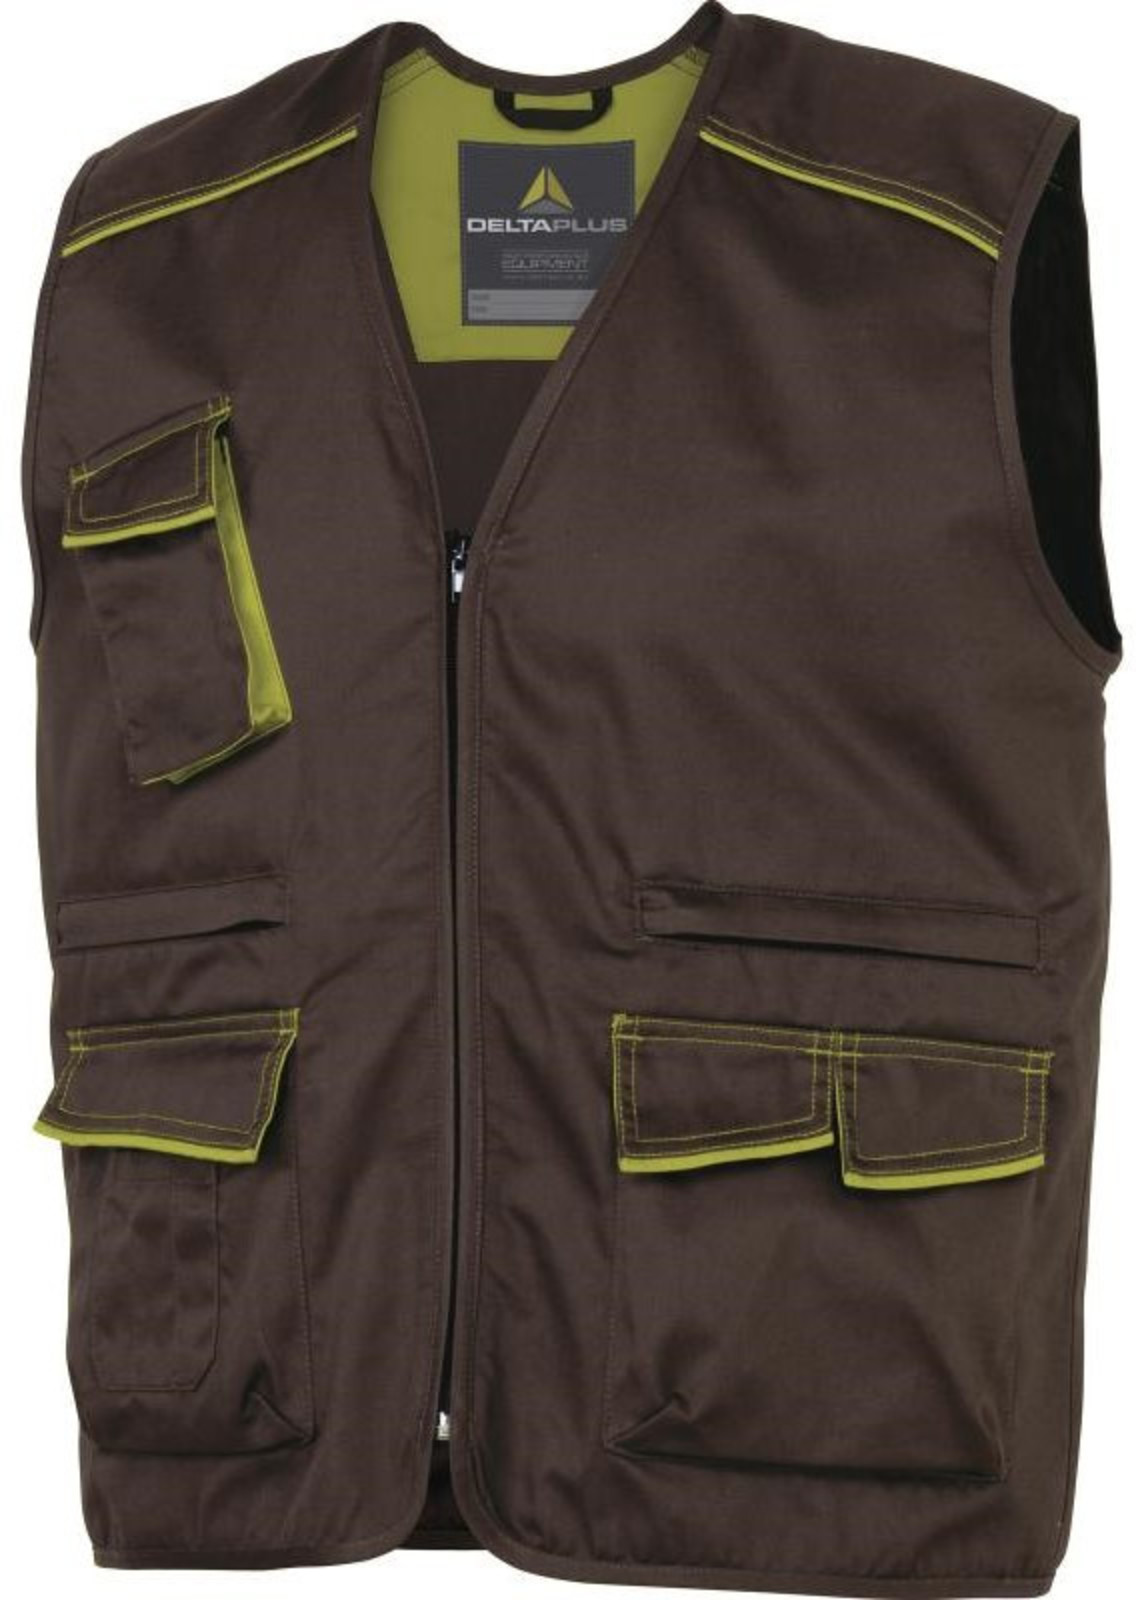 Pracovná vesta Delta Plus Panostyle M6gil  - veľkosť: S, farba: hnedá/zelená